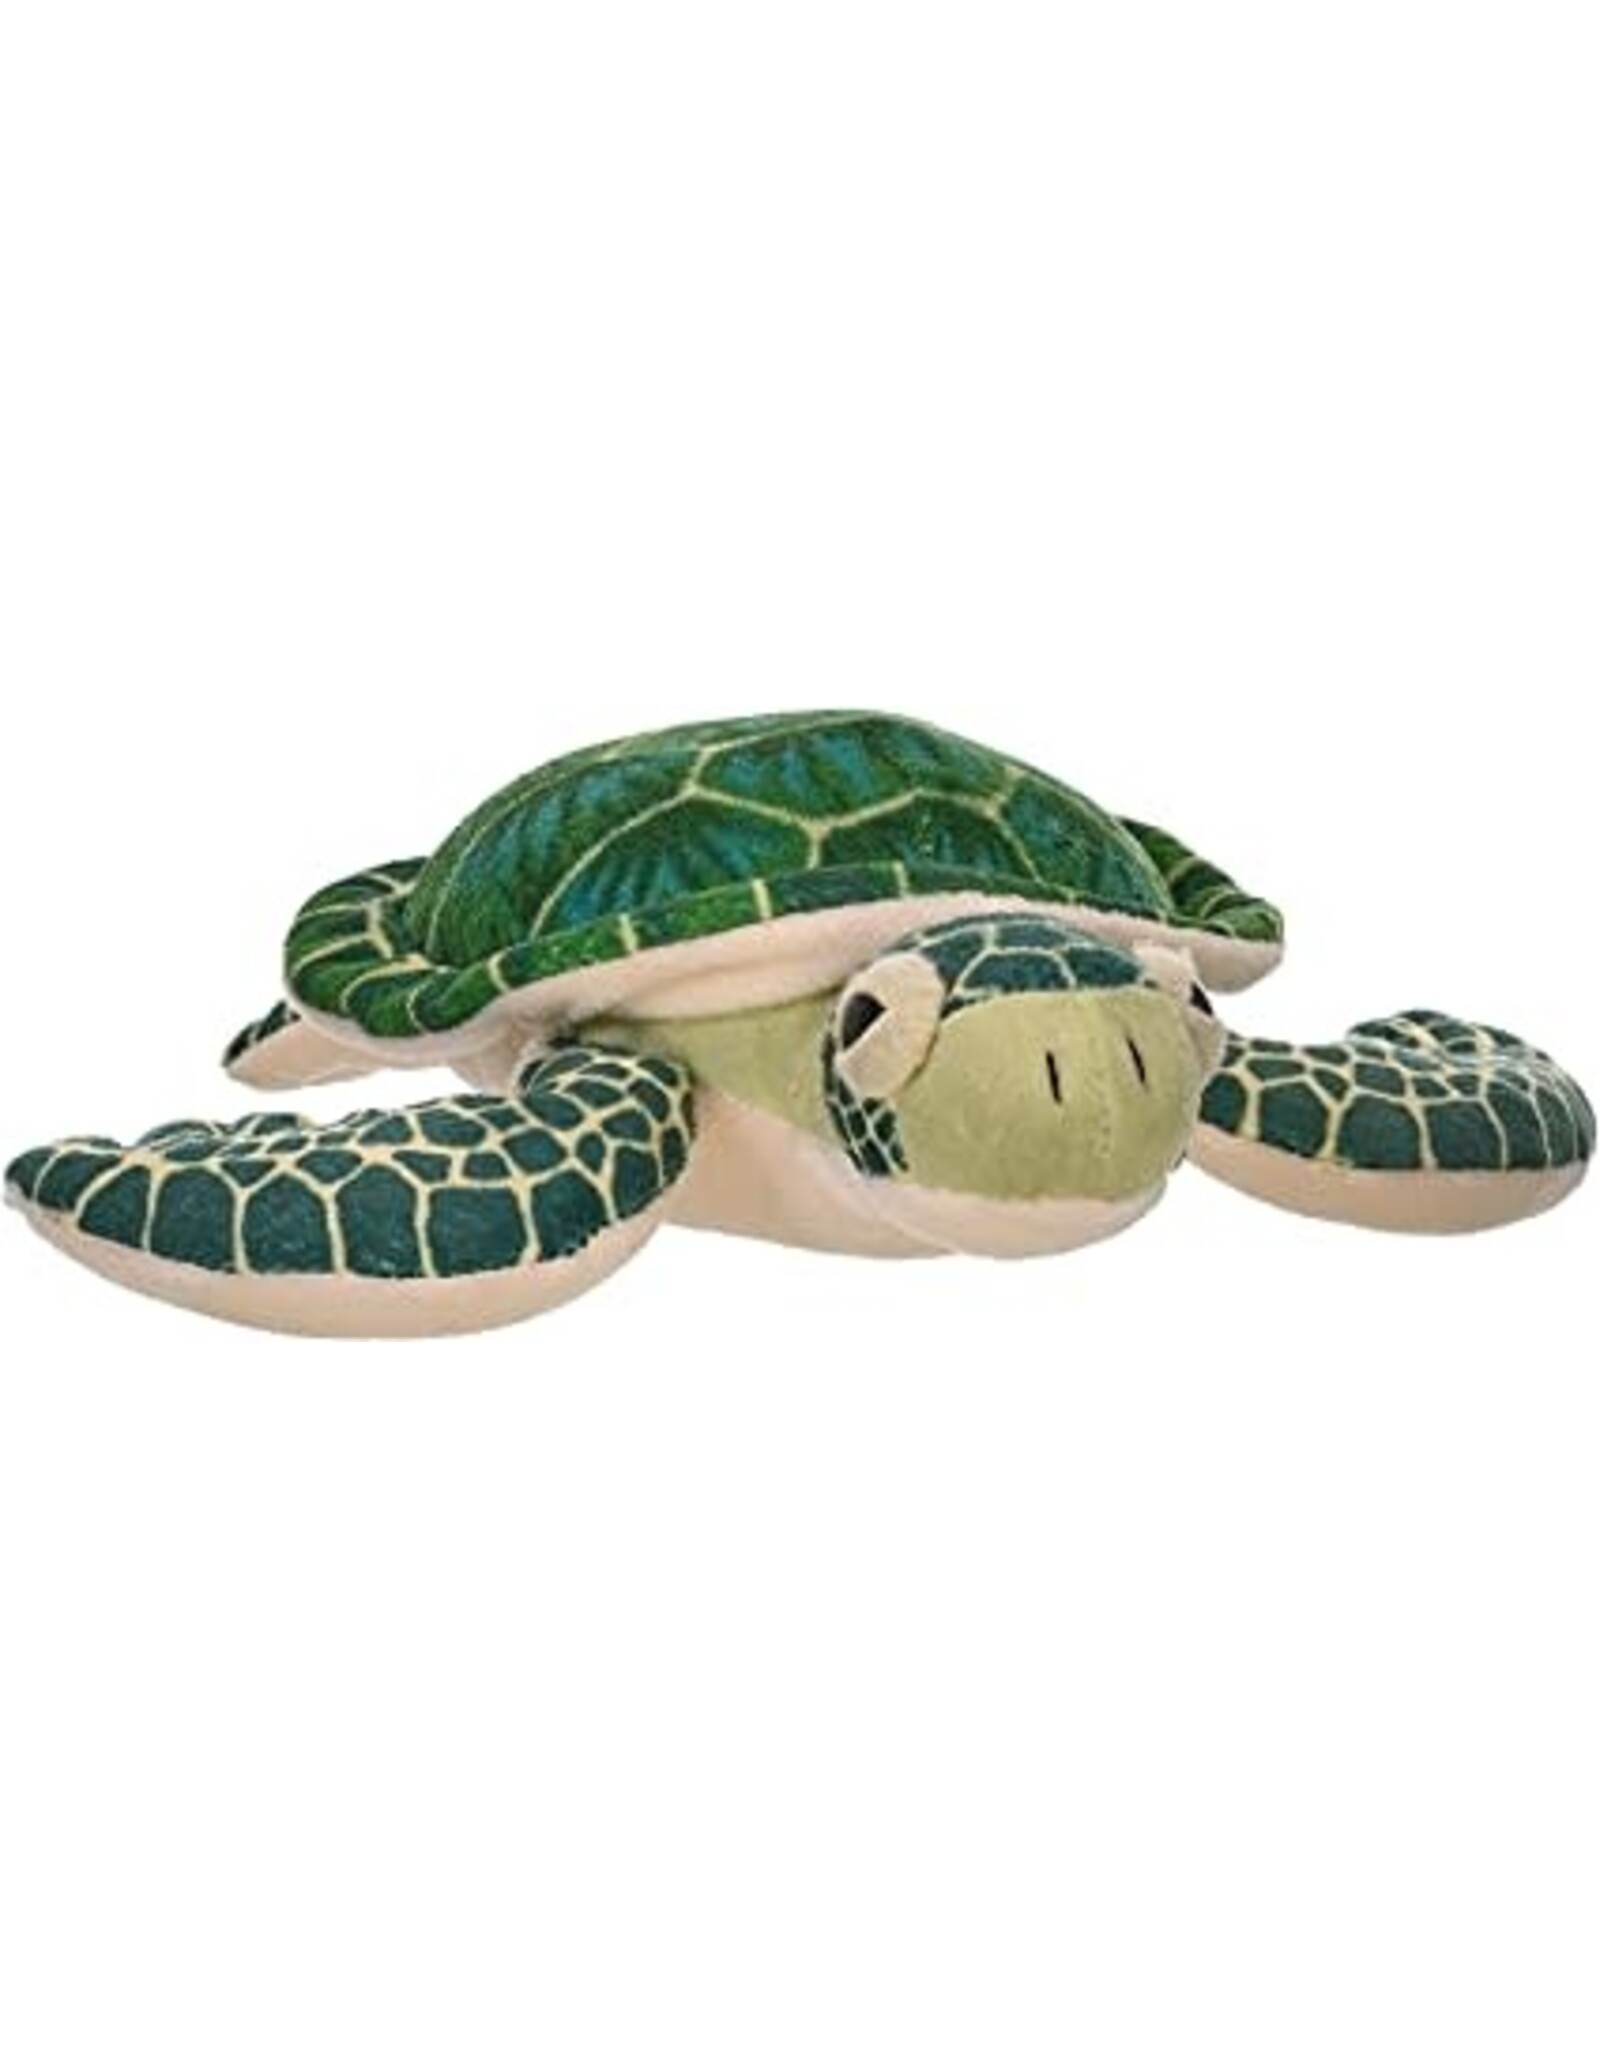 Jumbo Green Sea Turtle